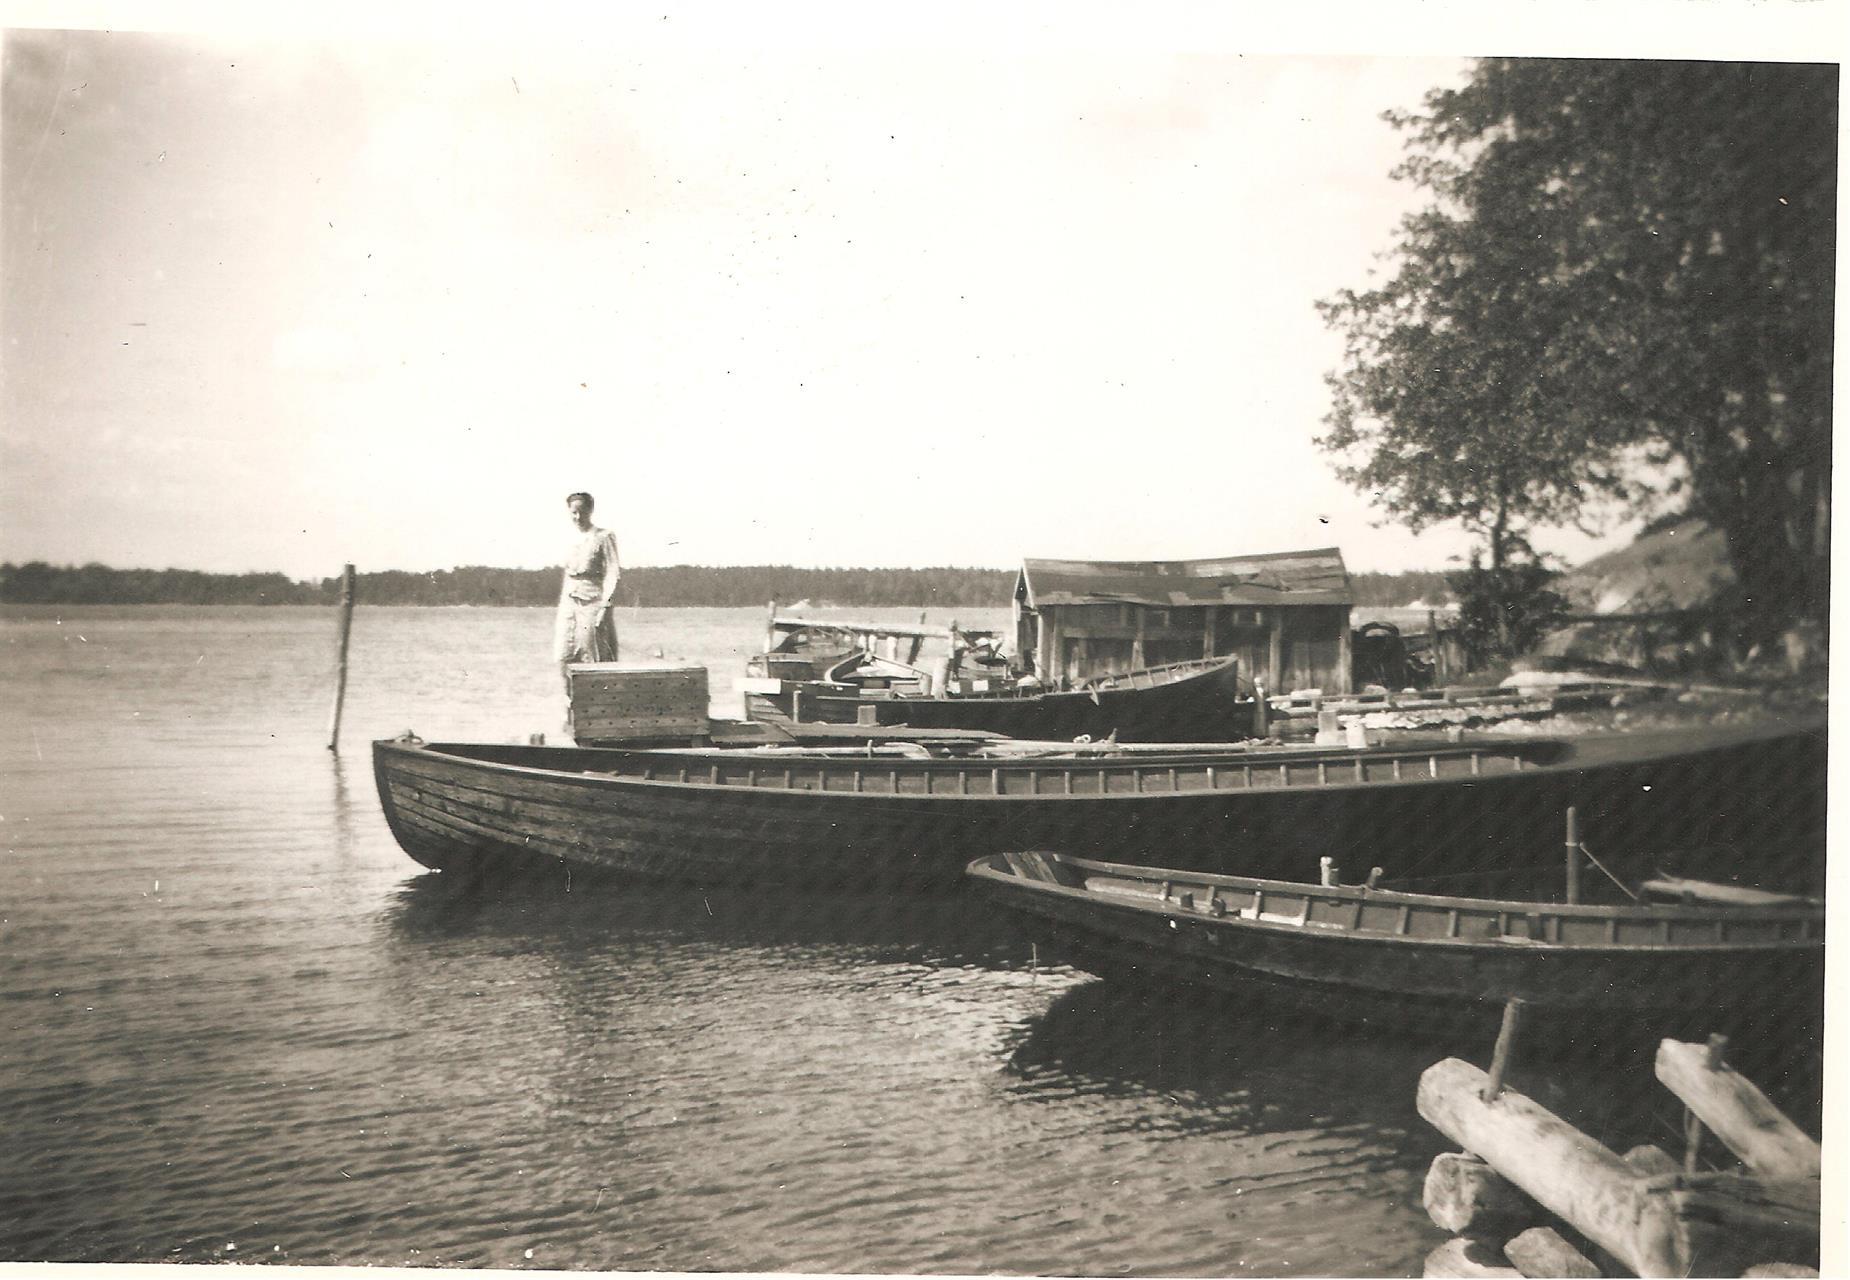 Gustav Ekroths skötbåt, Källarstugans båthus i bakgrunden